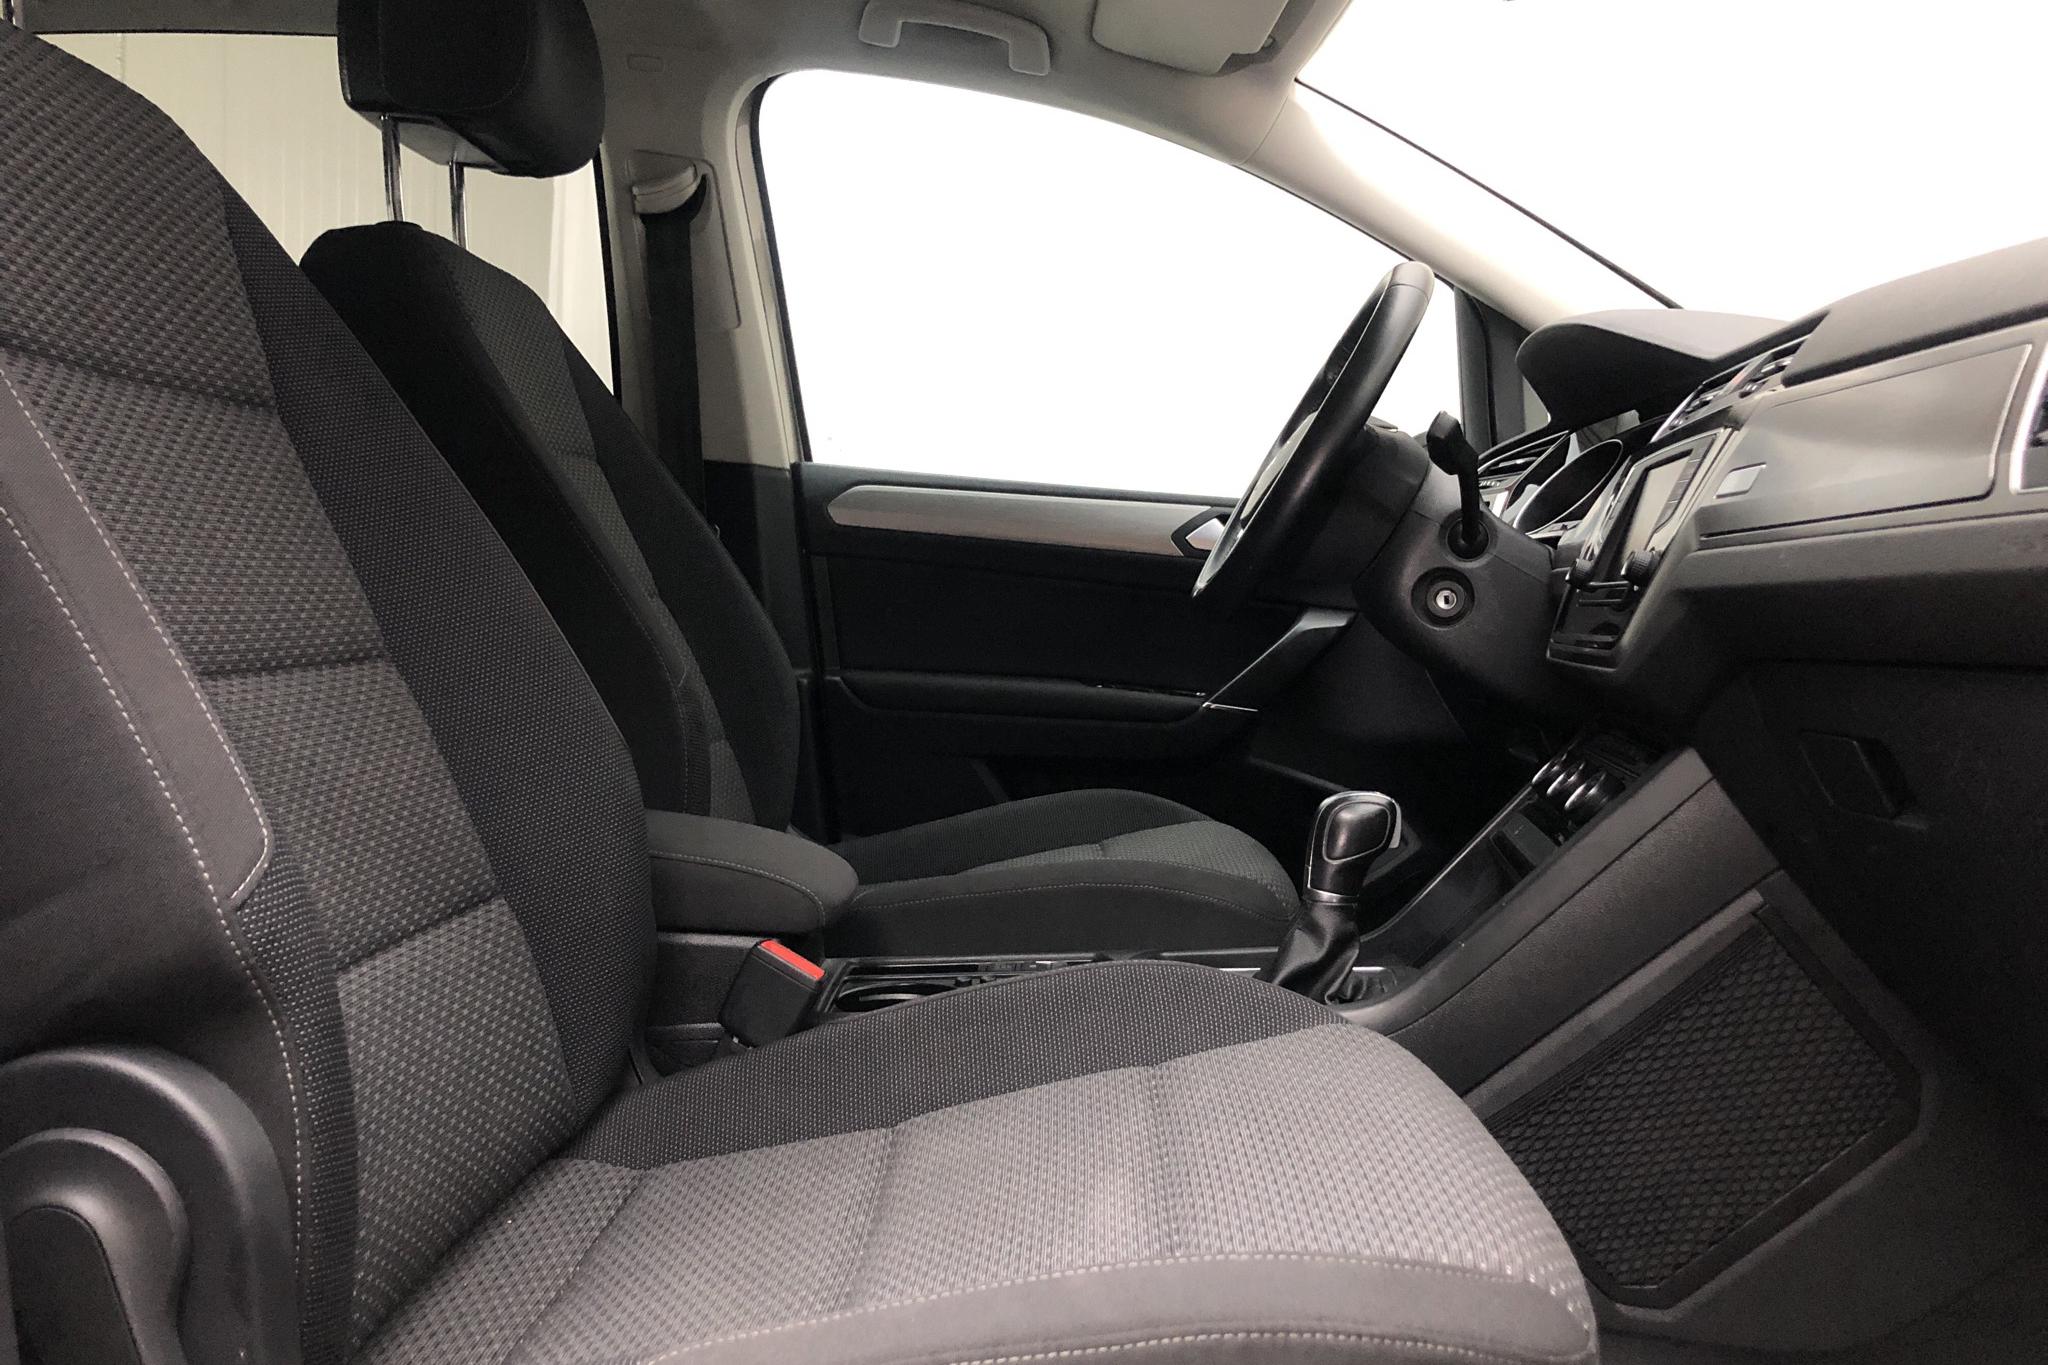 VW Touran 1.4 TSI (150hk) - 106 390 km - Automatic - silver - 2017